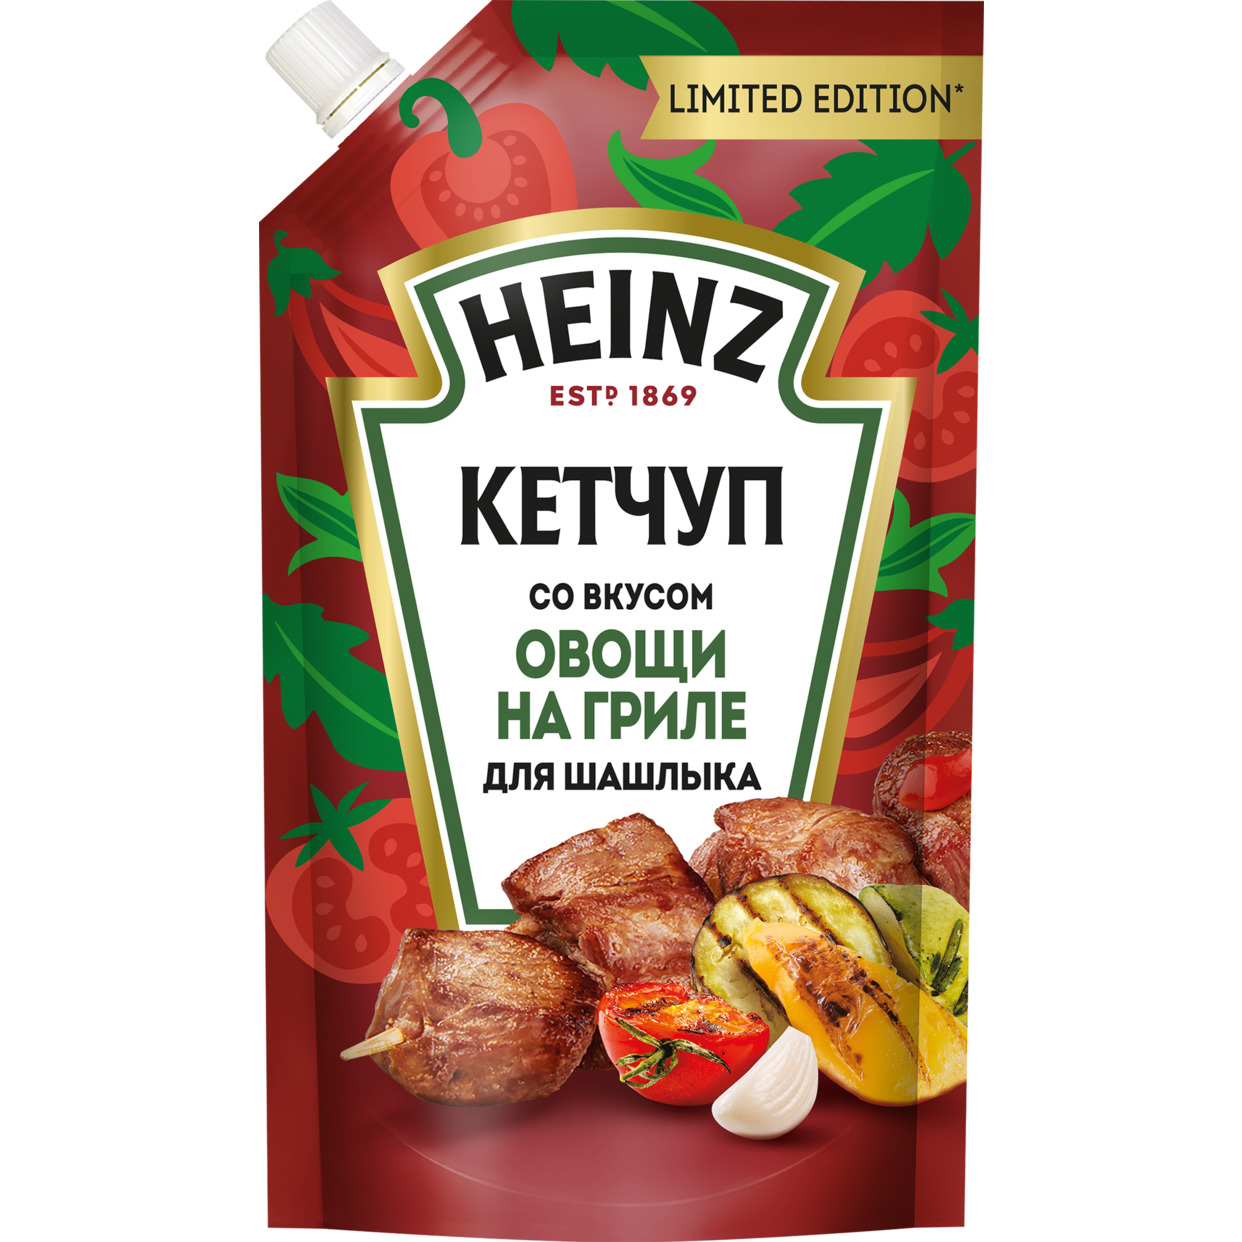 Кетчуп Со вкусом овощи на гриле для шашлыка 320г